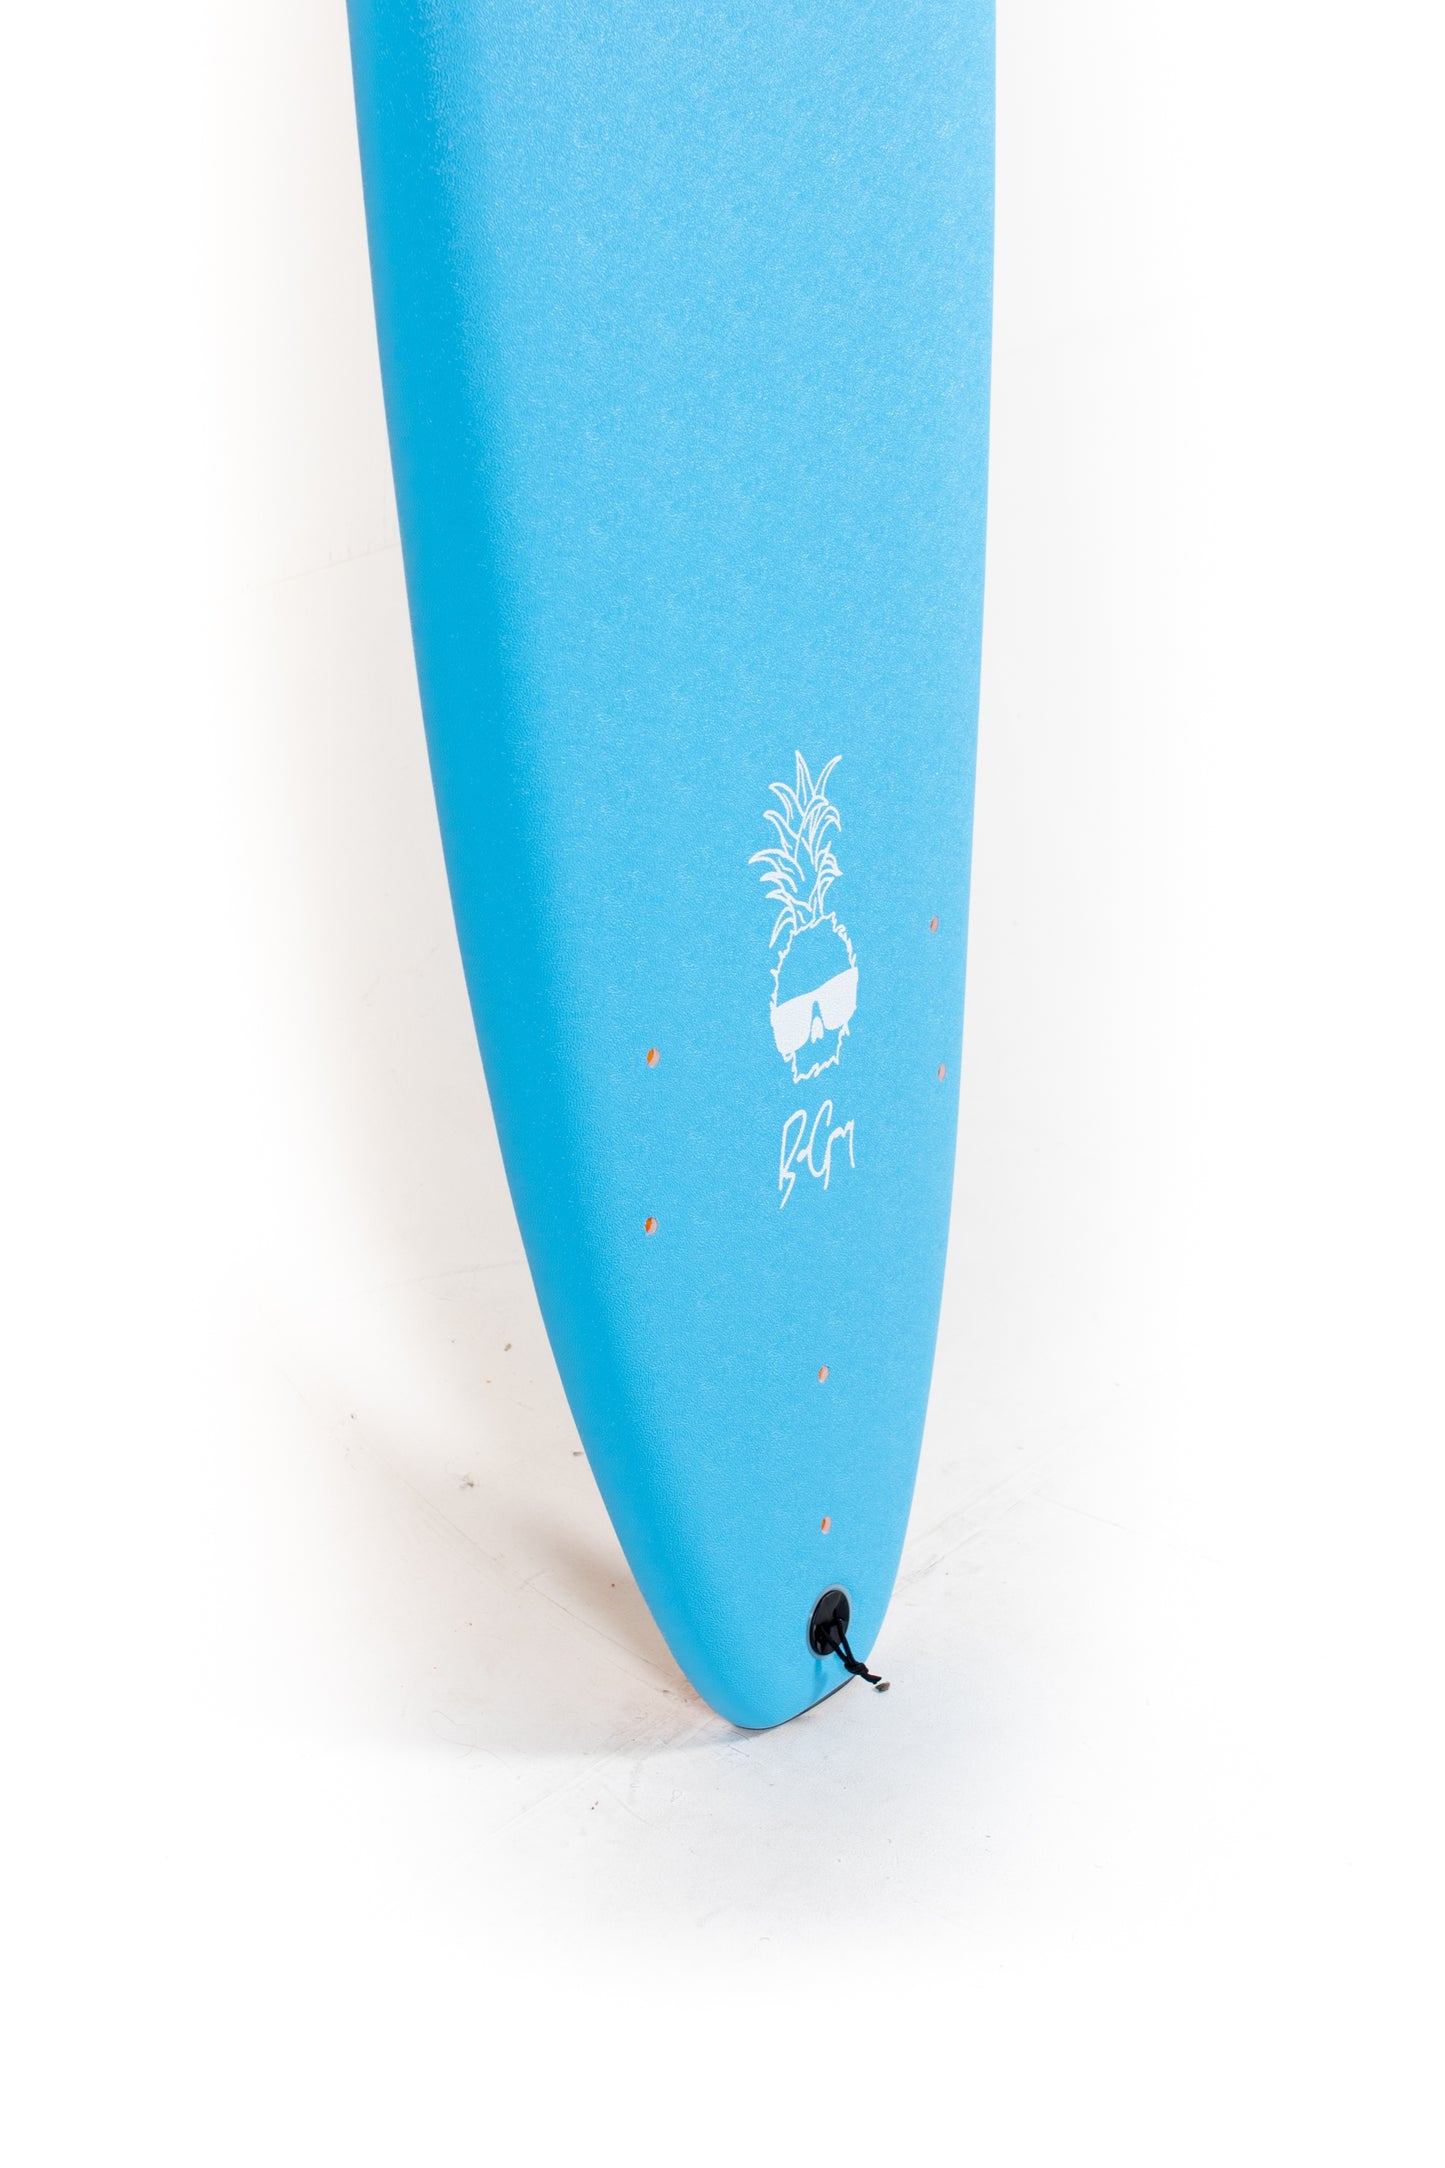 
                  
                    Catch Surf - WAVE BANDIT - EASY RIDER - 8'0" x 23" x 3,375" x 86L
                  
                